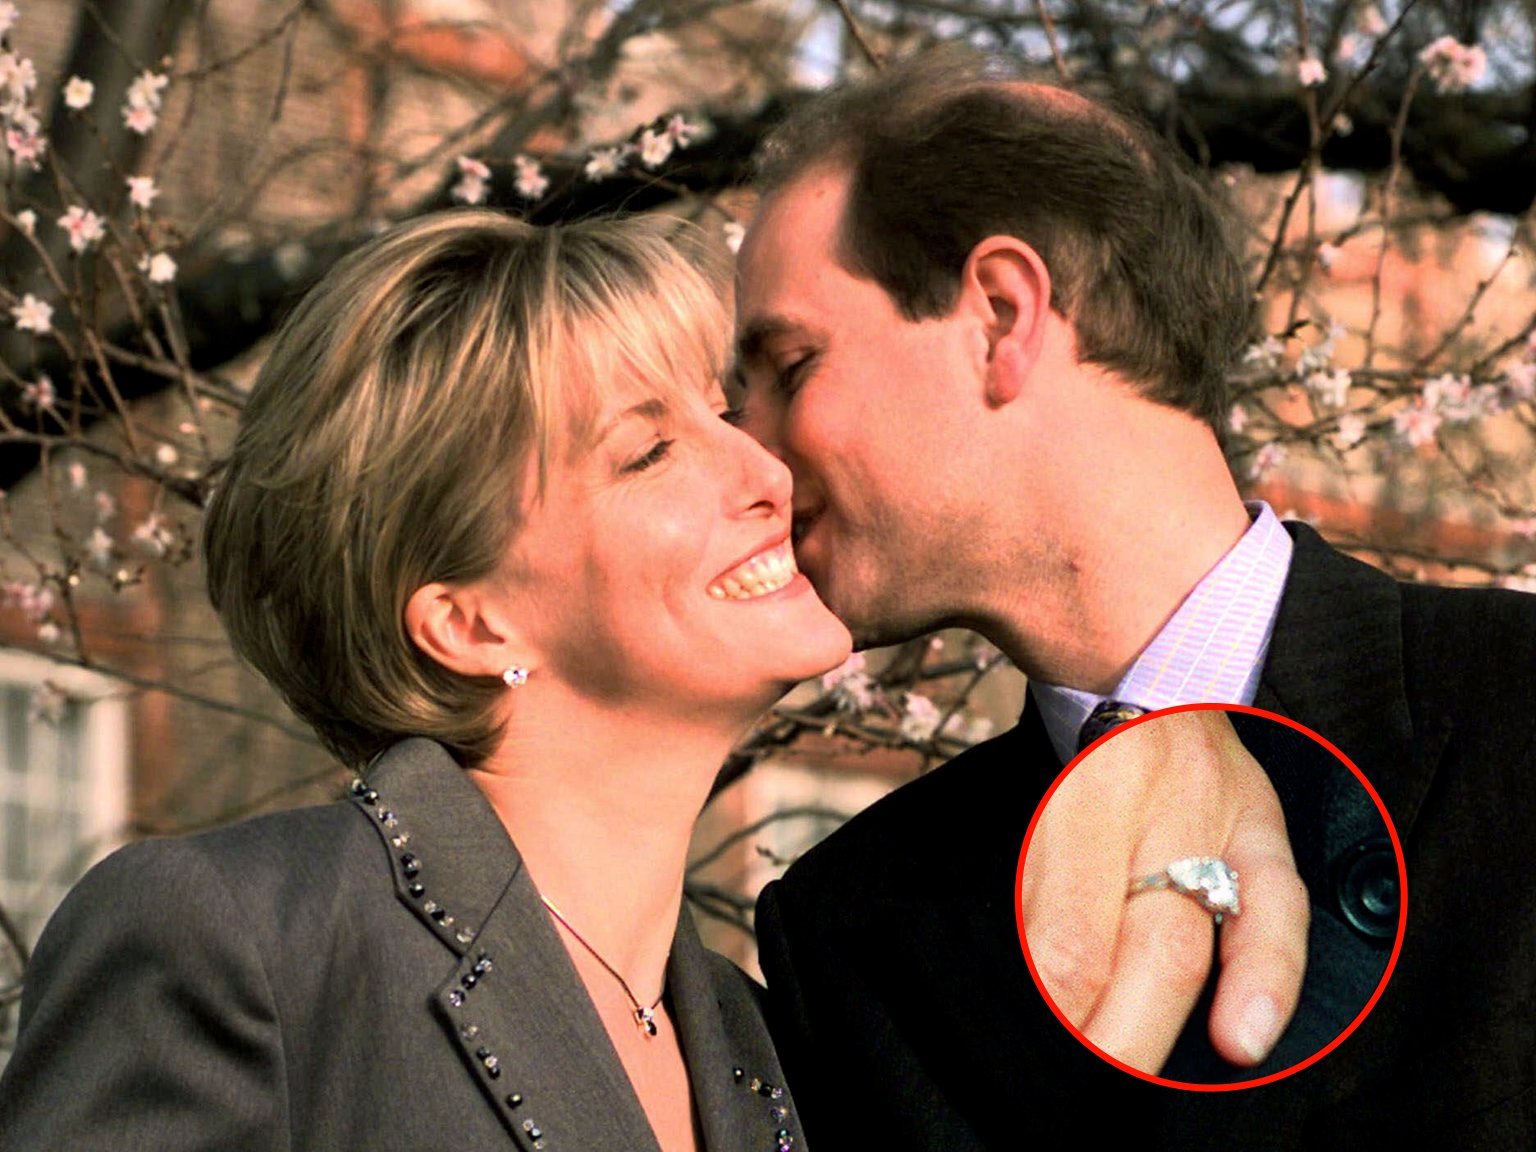   Ảnh chụp ngày 6/1/1999, Hoàng tử Edward hôn người vợ chưa cưới của mình sau khi cầu hôn bà – Nguồn: The Daily Mail  